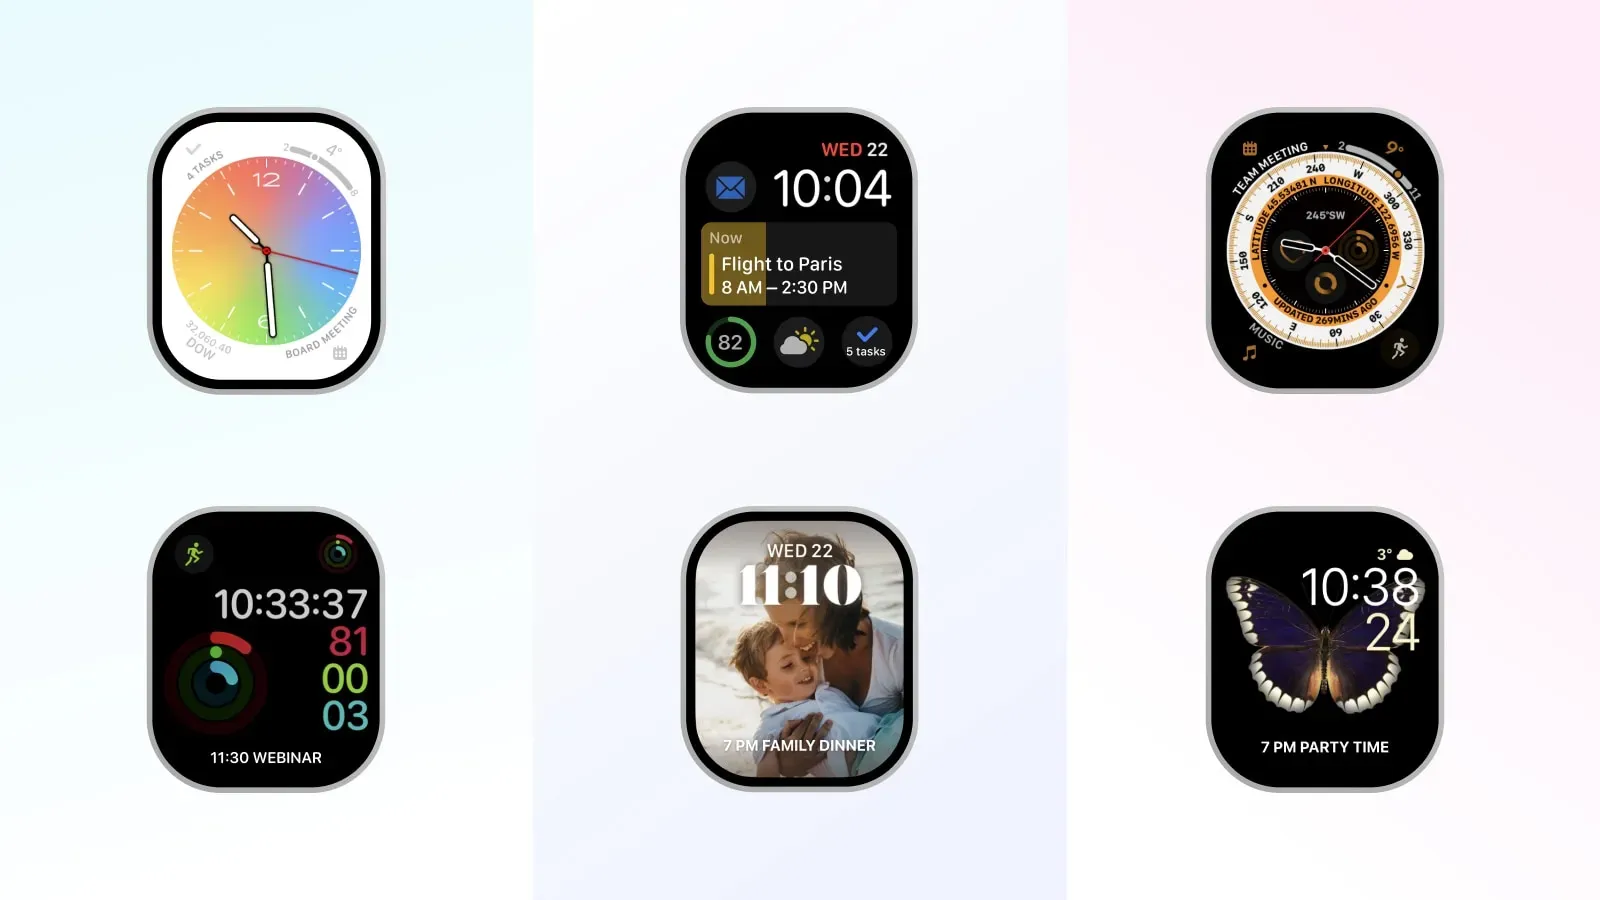 Visueel overzicht van zes nieuwe Apple Watch-wijzerplaten in Readdle Calendars